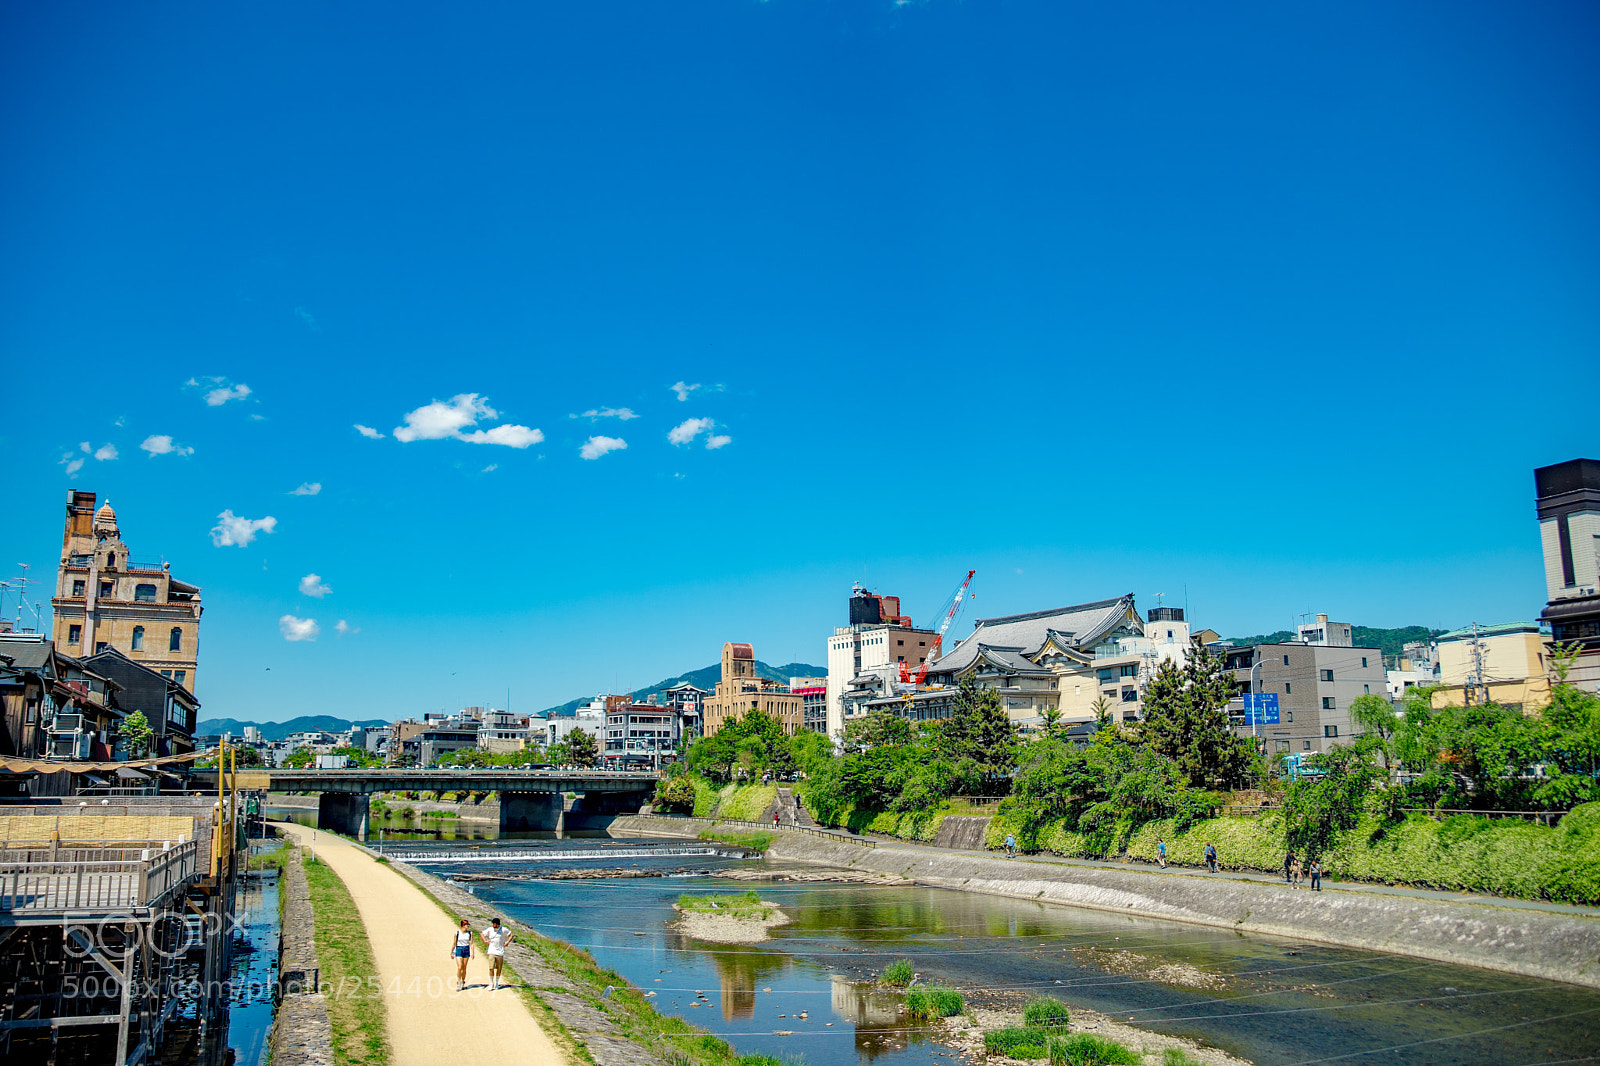 Sony a7 II sample photo. Kamogawa-river and blue sky photography